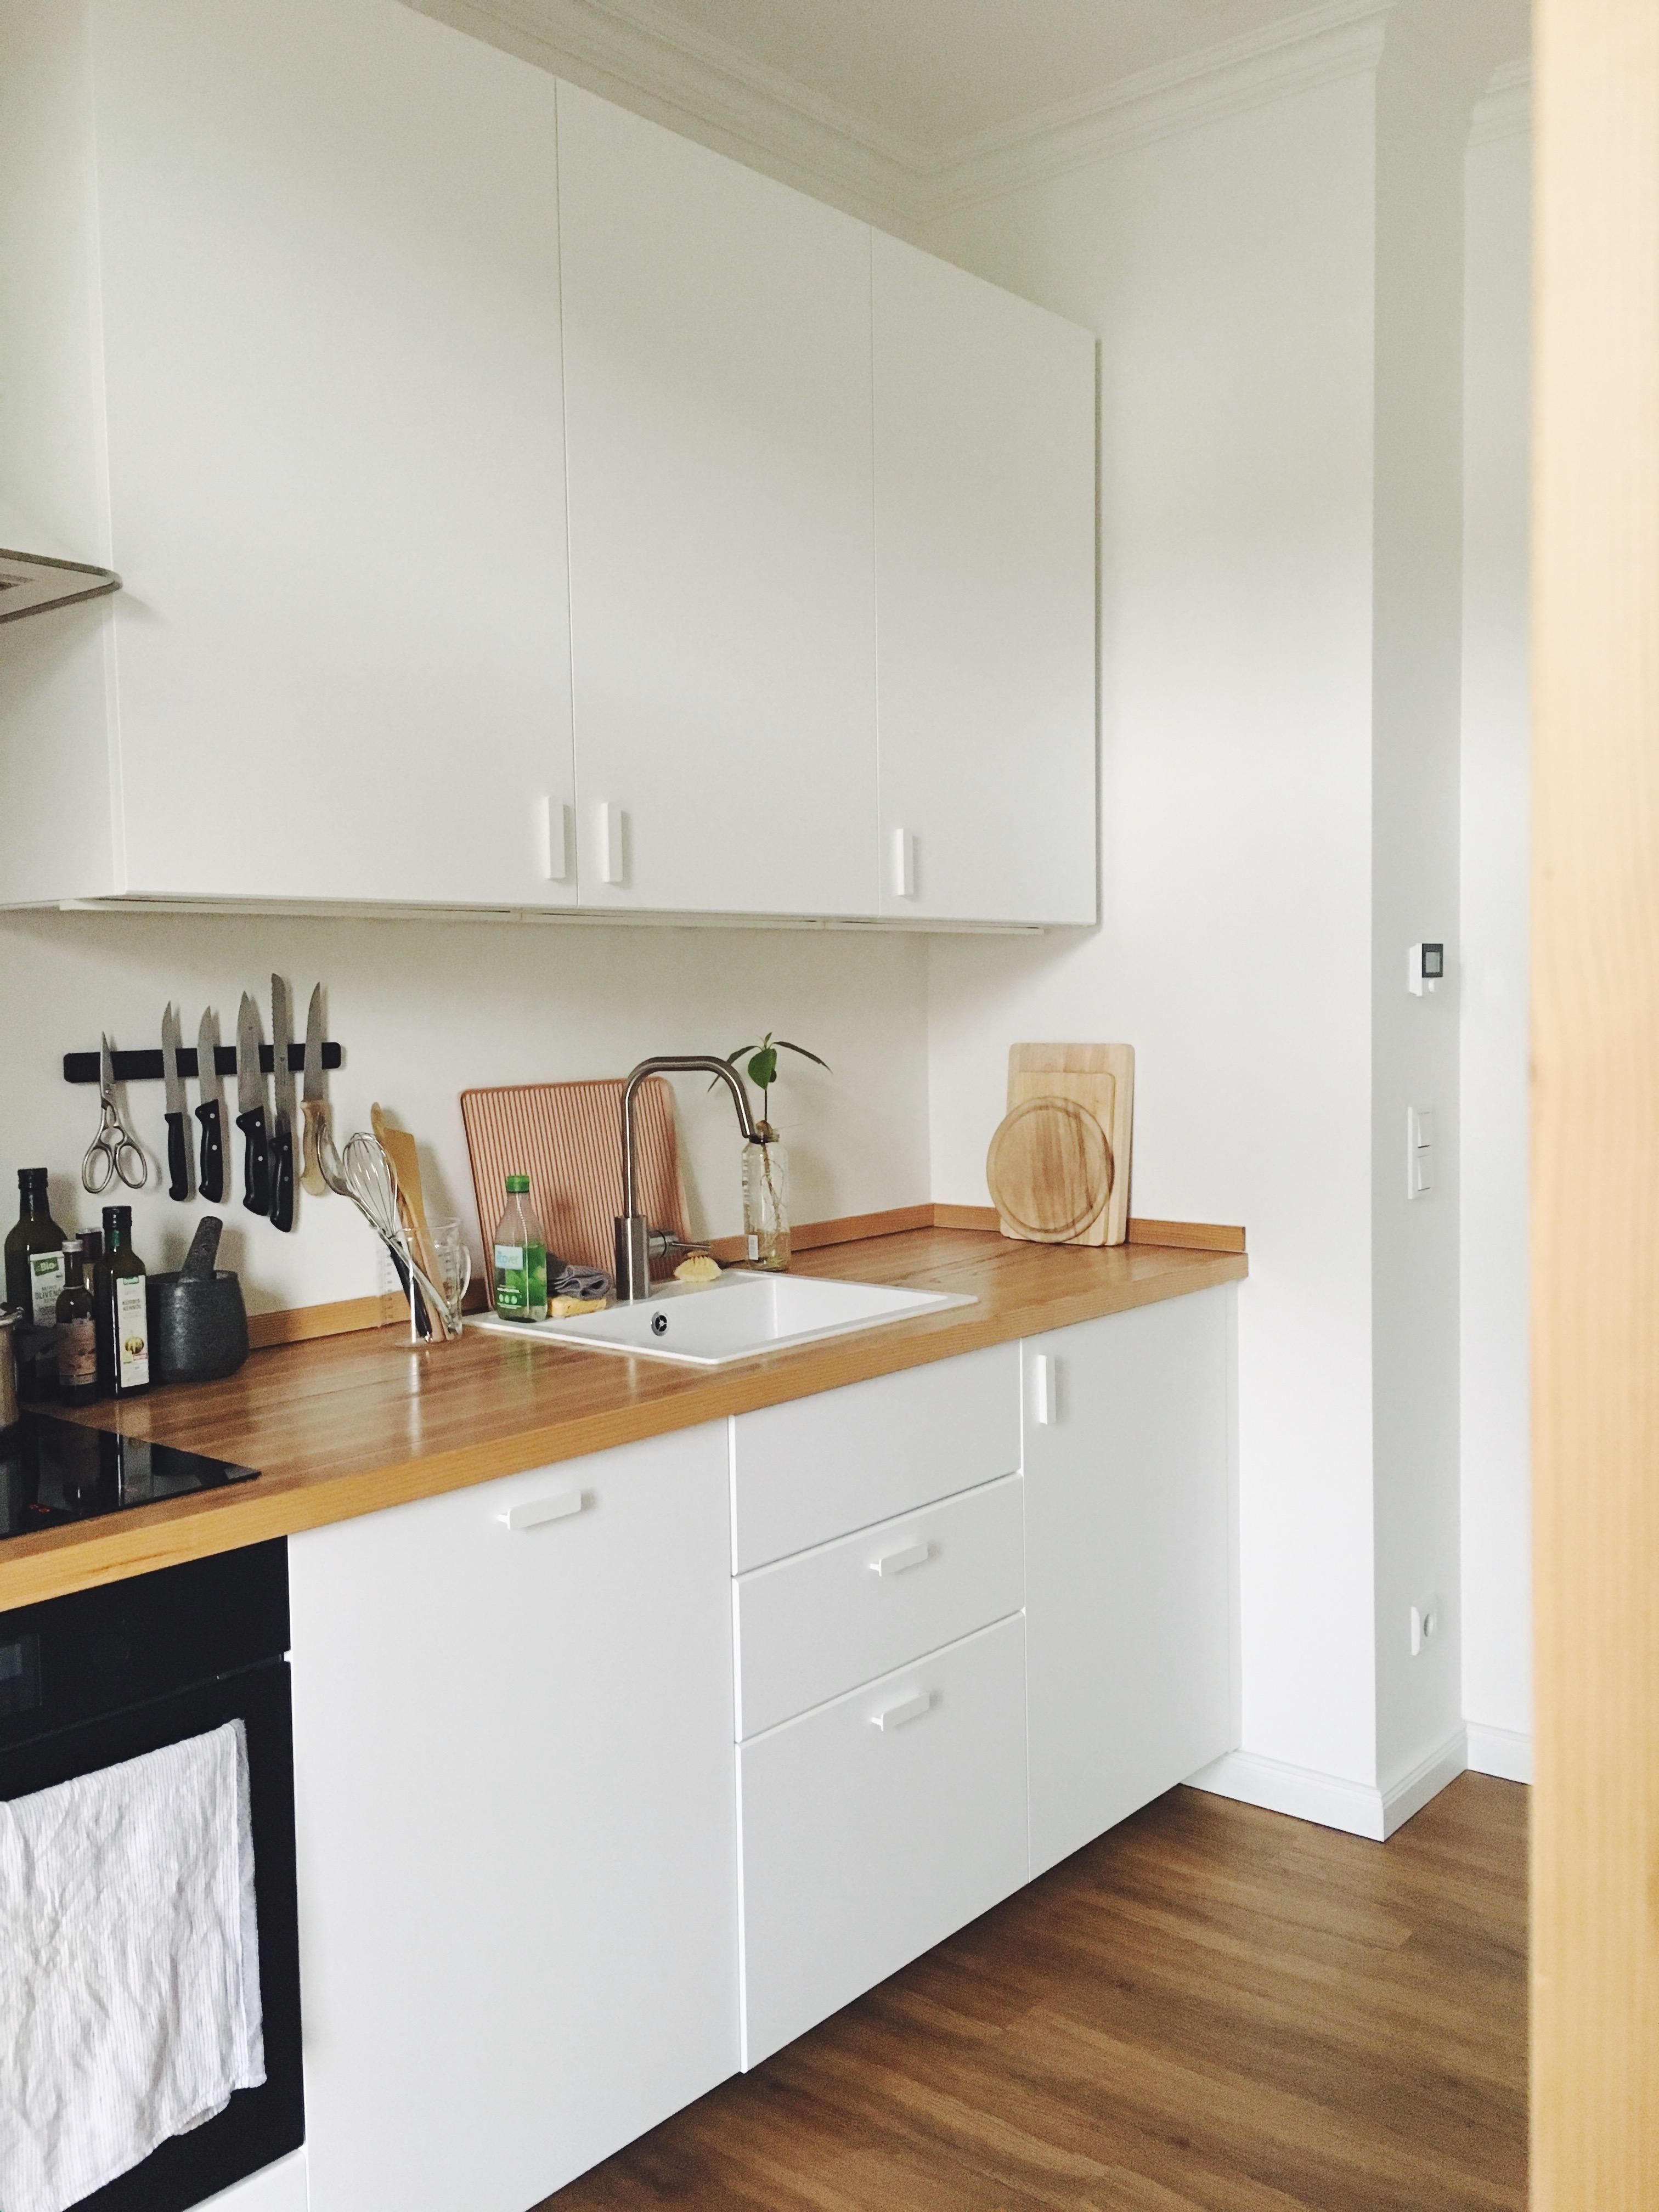 our little light kitchen space ✨ #küche #ikeaküche #kitchen #weißeküche #simplicity #cleanlook